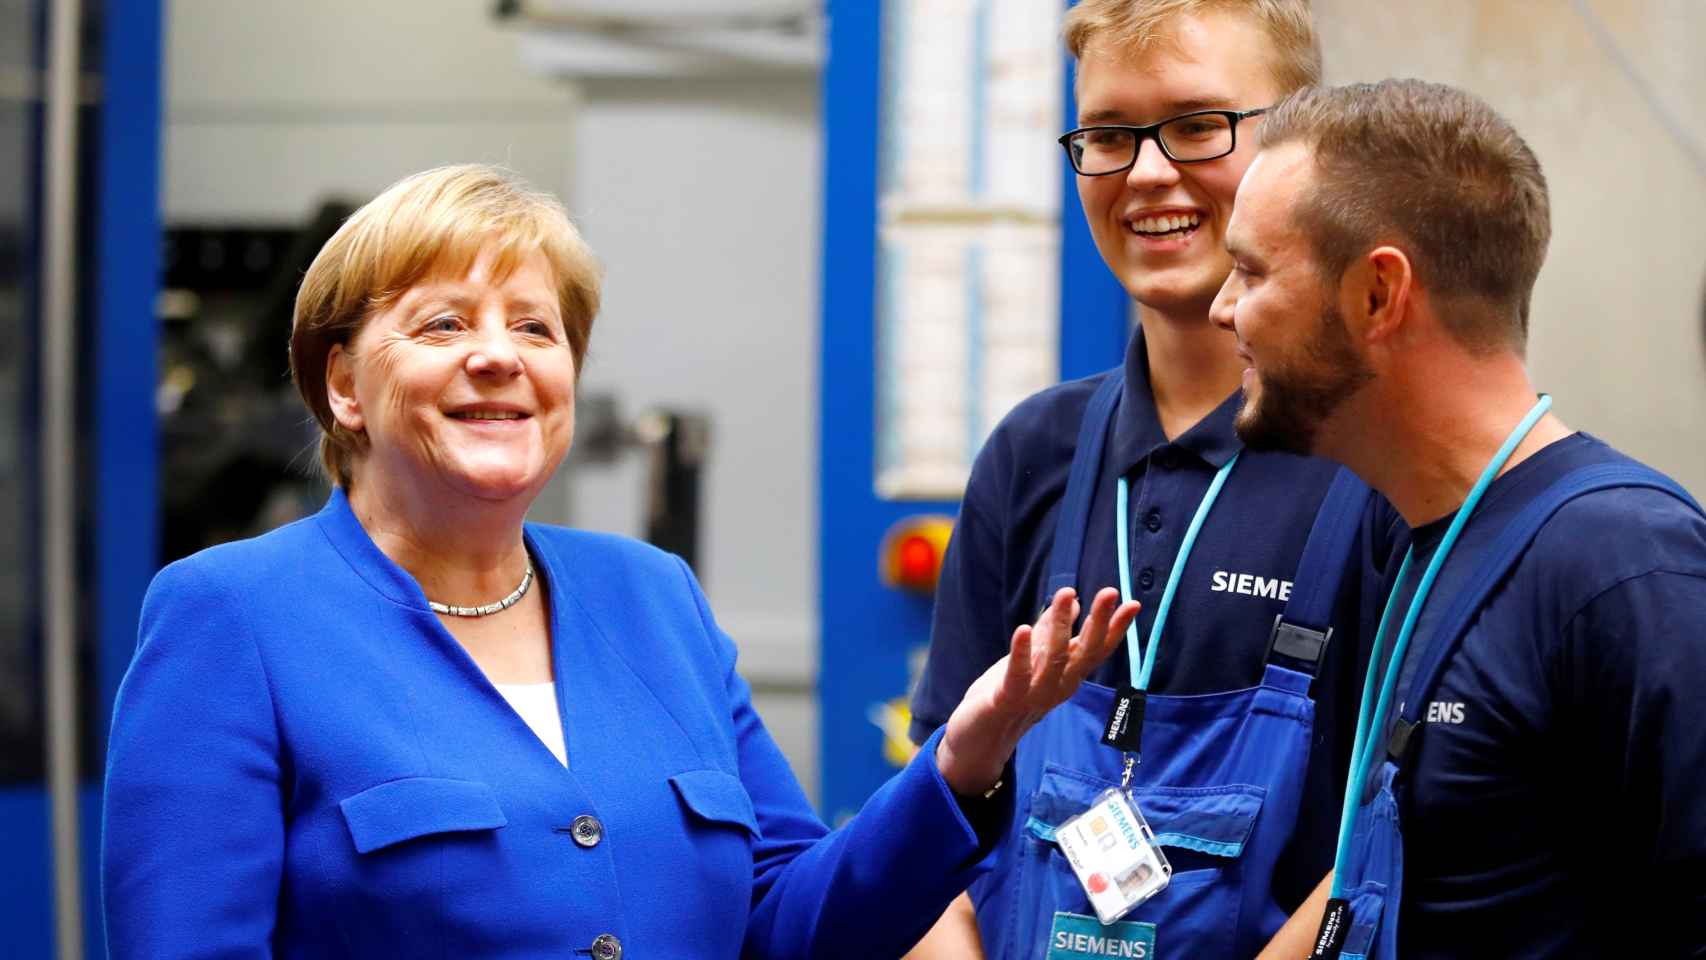 Merkel con unos trabajadores de Siemens en una visita a la planta de Goerlitz